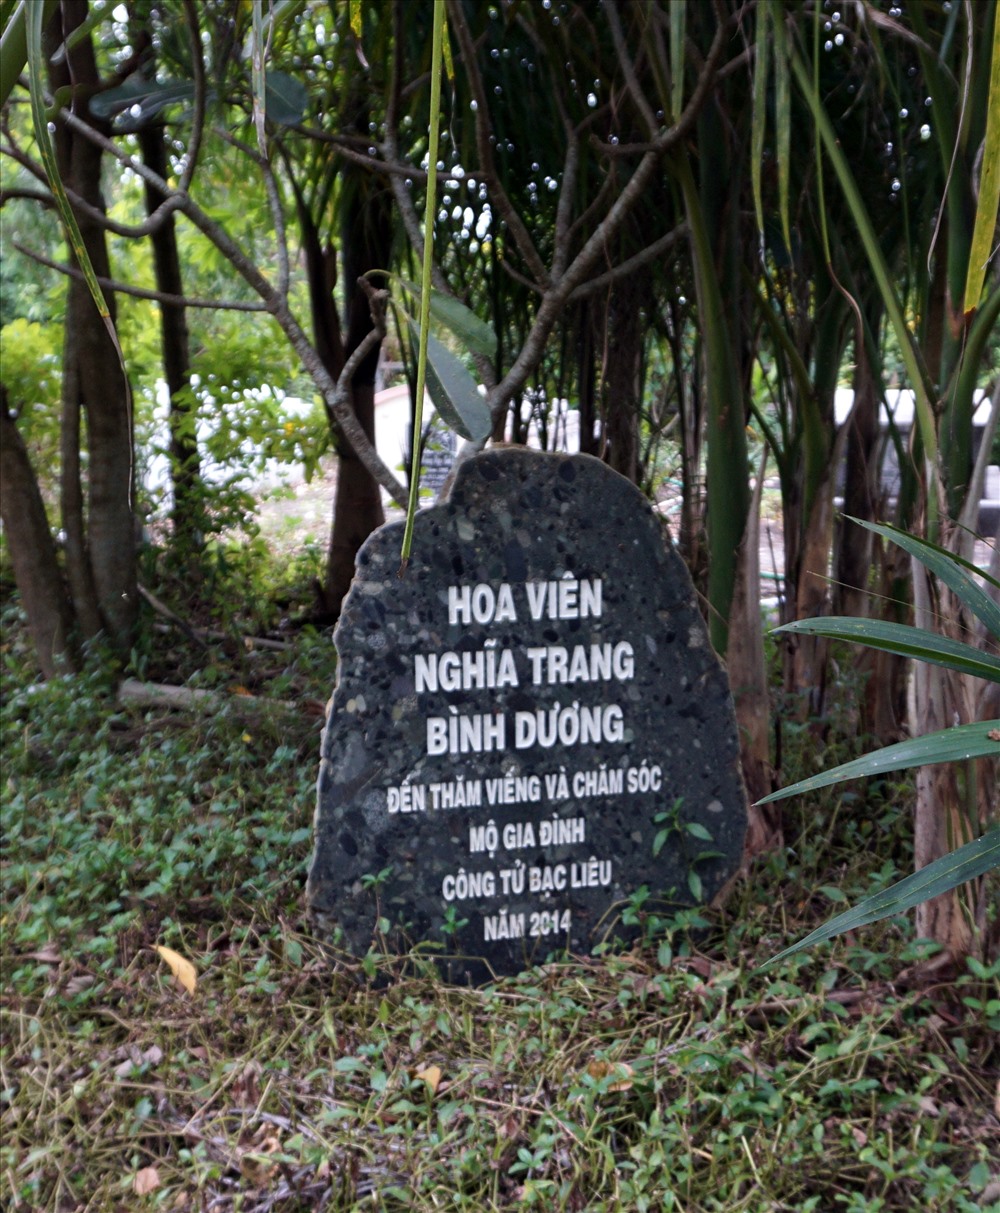 Năm 2014, Hoa viên nghĩa trang Bình Dương đến dọn dẹp trồng hoa. Tuy nhiên được một thời gian do gia đình thiếu chăm sóc nên khu mộ trông không được đẹp  (ảnh Nhật Hồ)